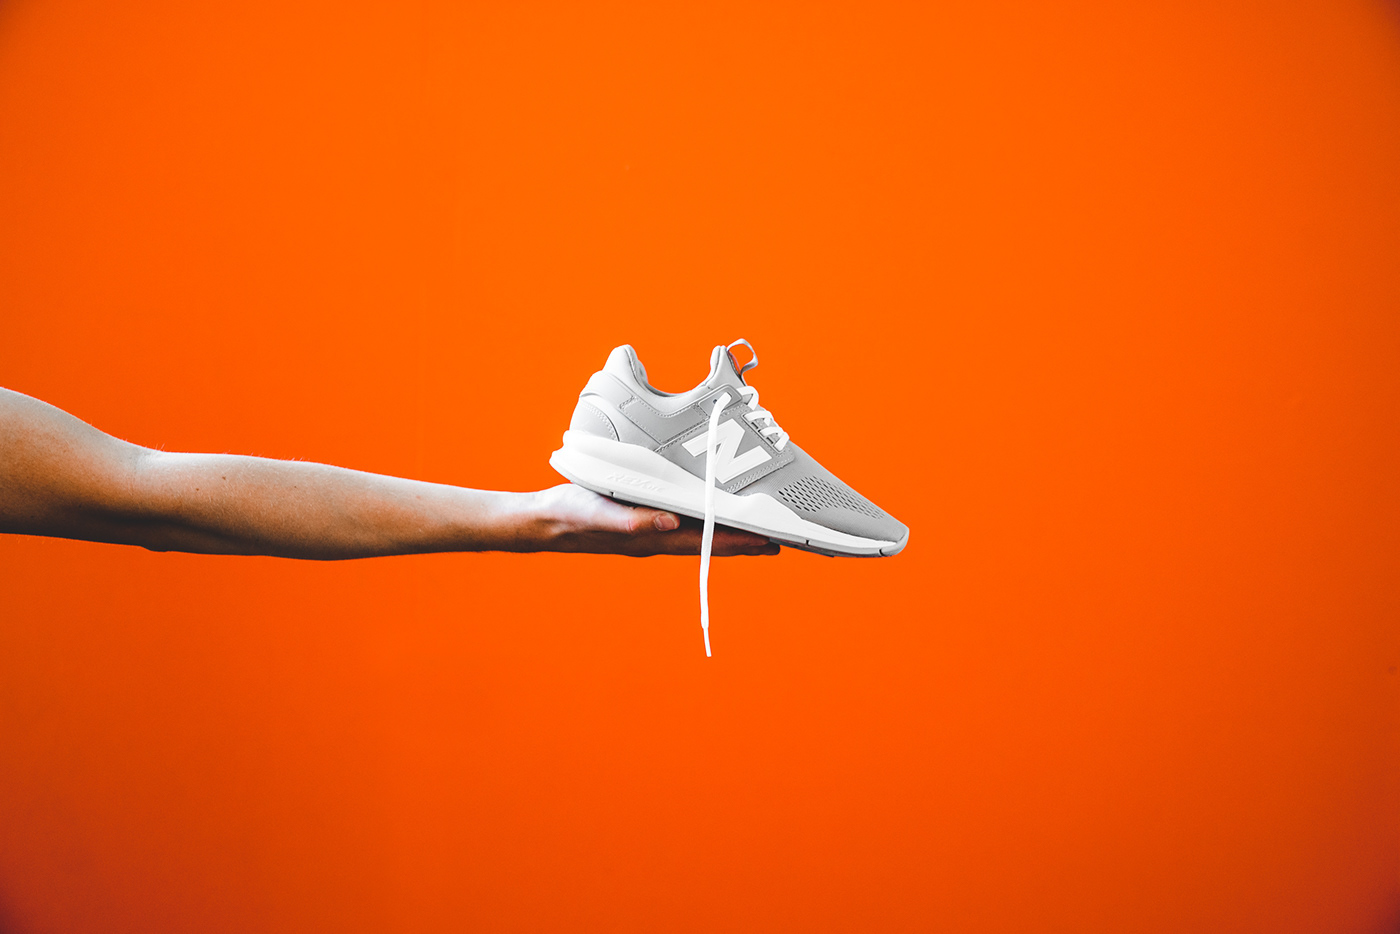 sneaker Nike adidas converse Aasics reebok footwear Street culture solebox